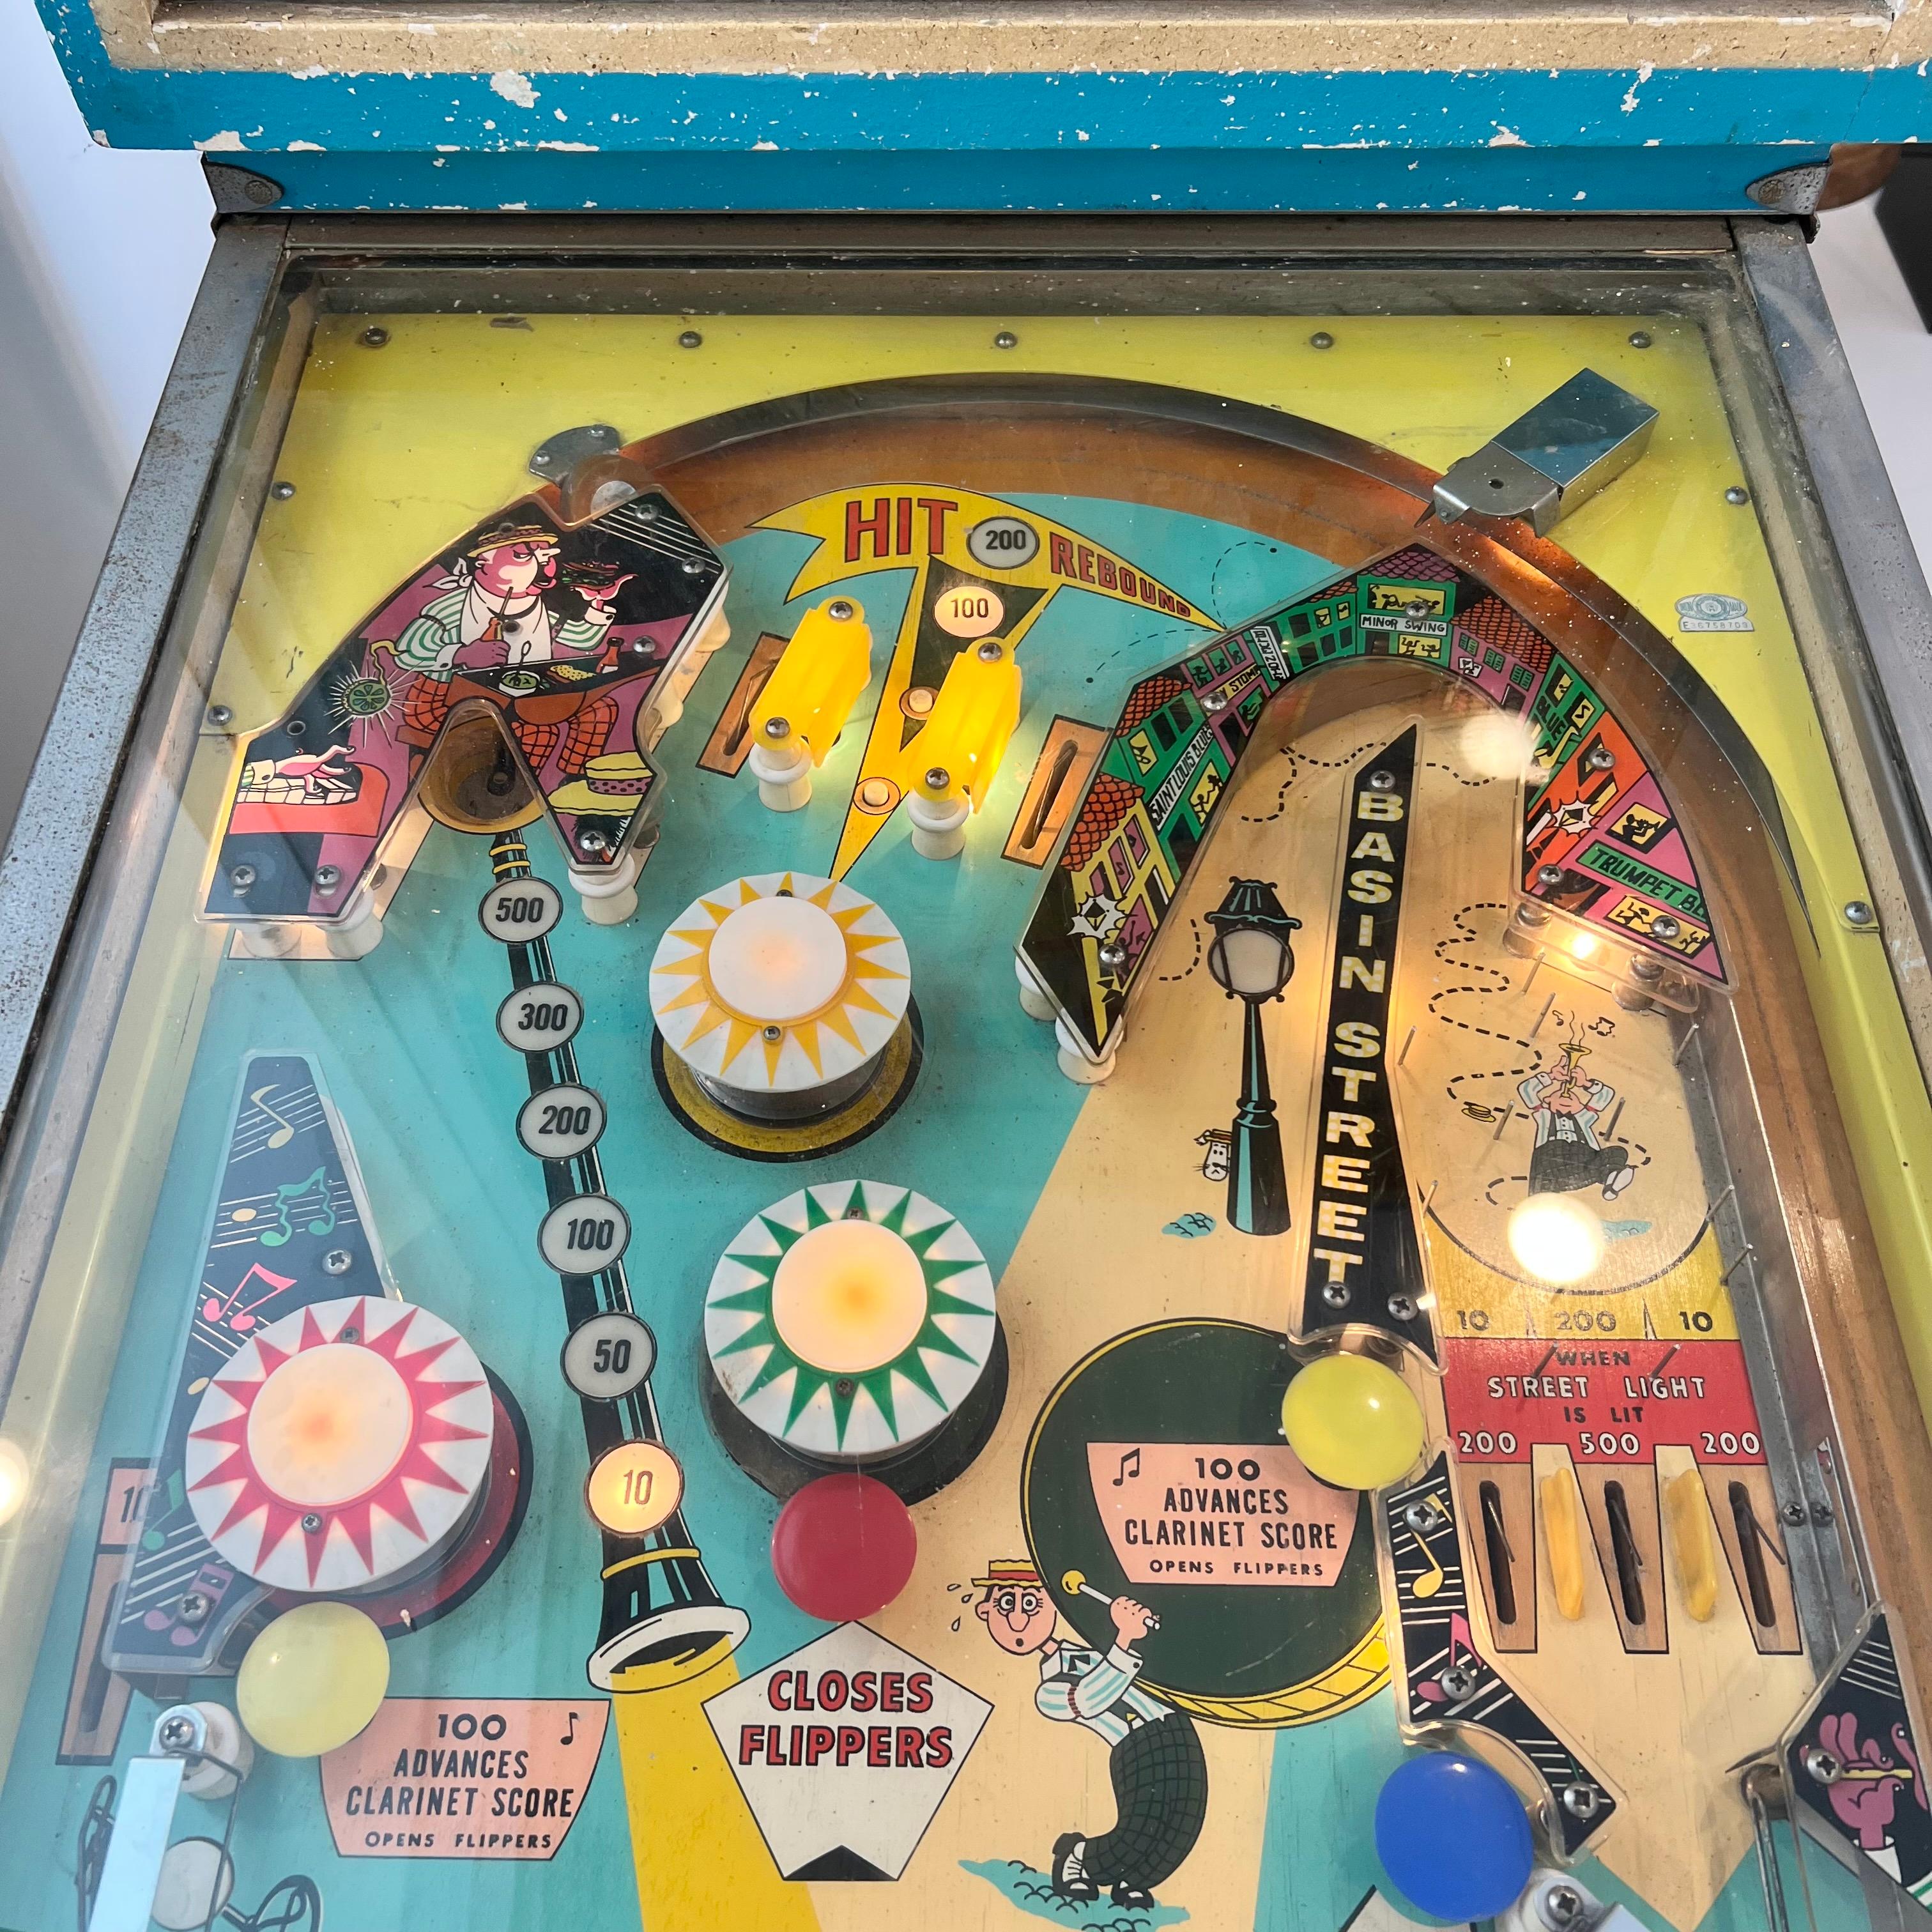 American Bally's 'Dixieland' Pinball Arcade Game, 1968